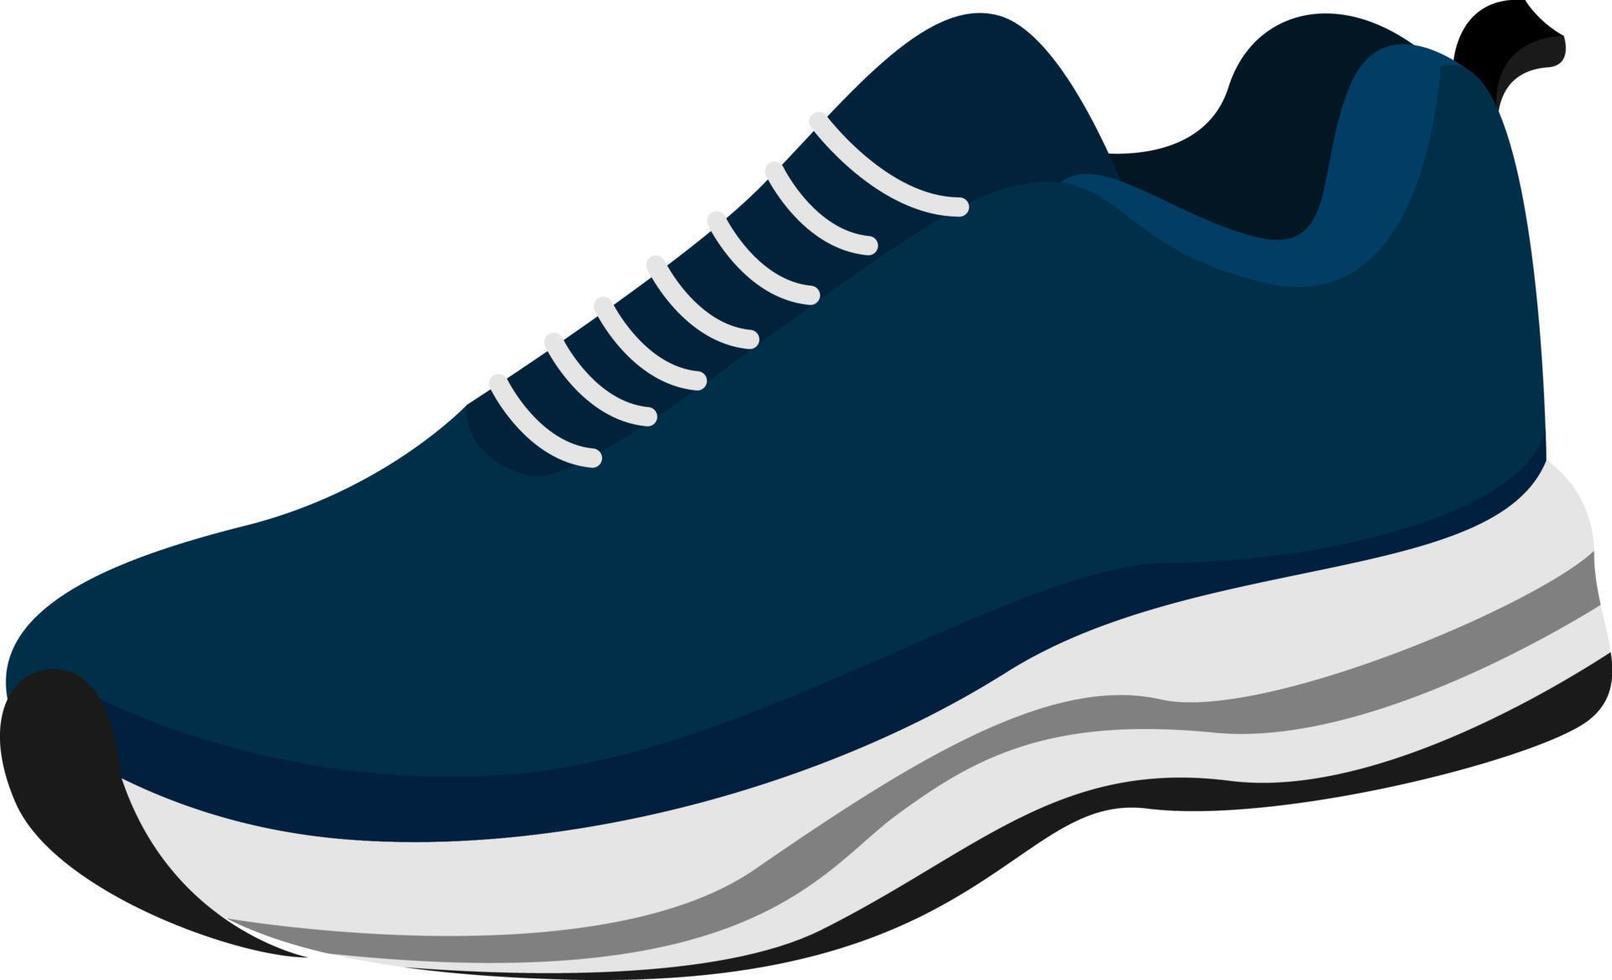 blauer Sneaker, Illustration, Vektor auf weißem Hintergrund.